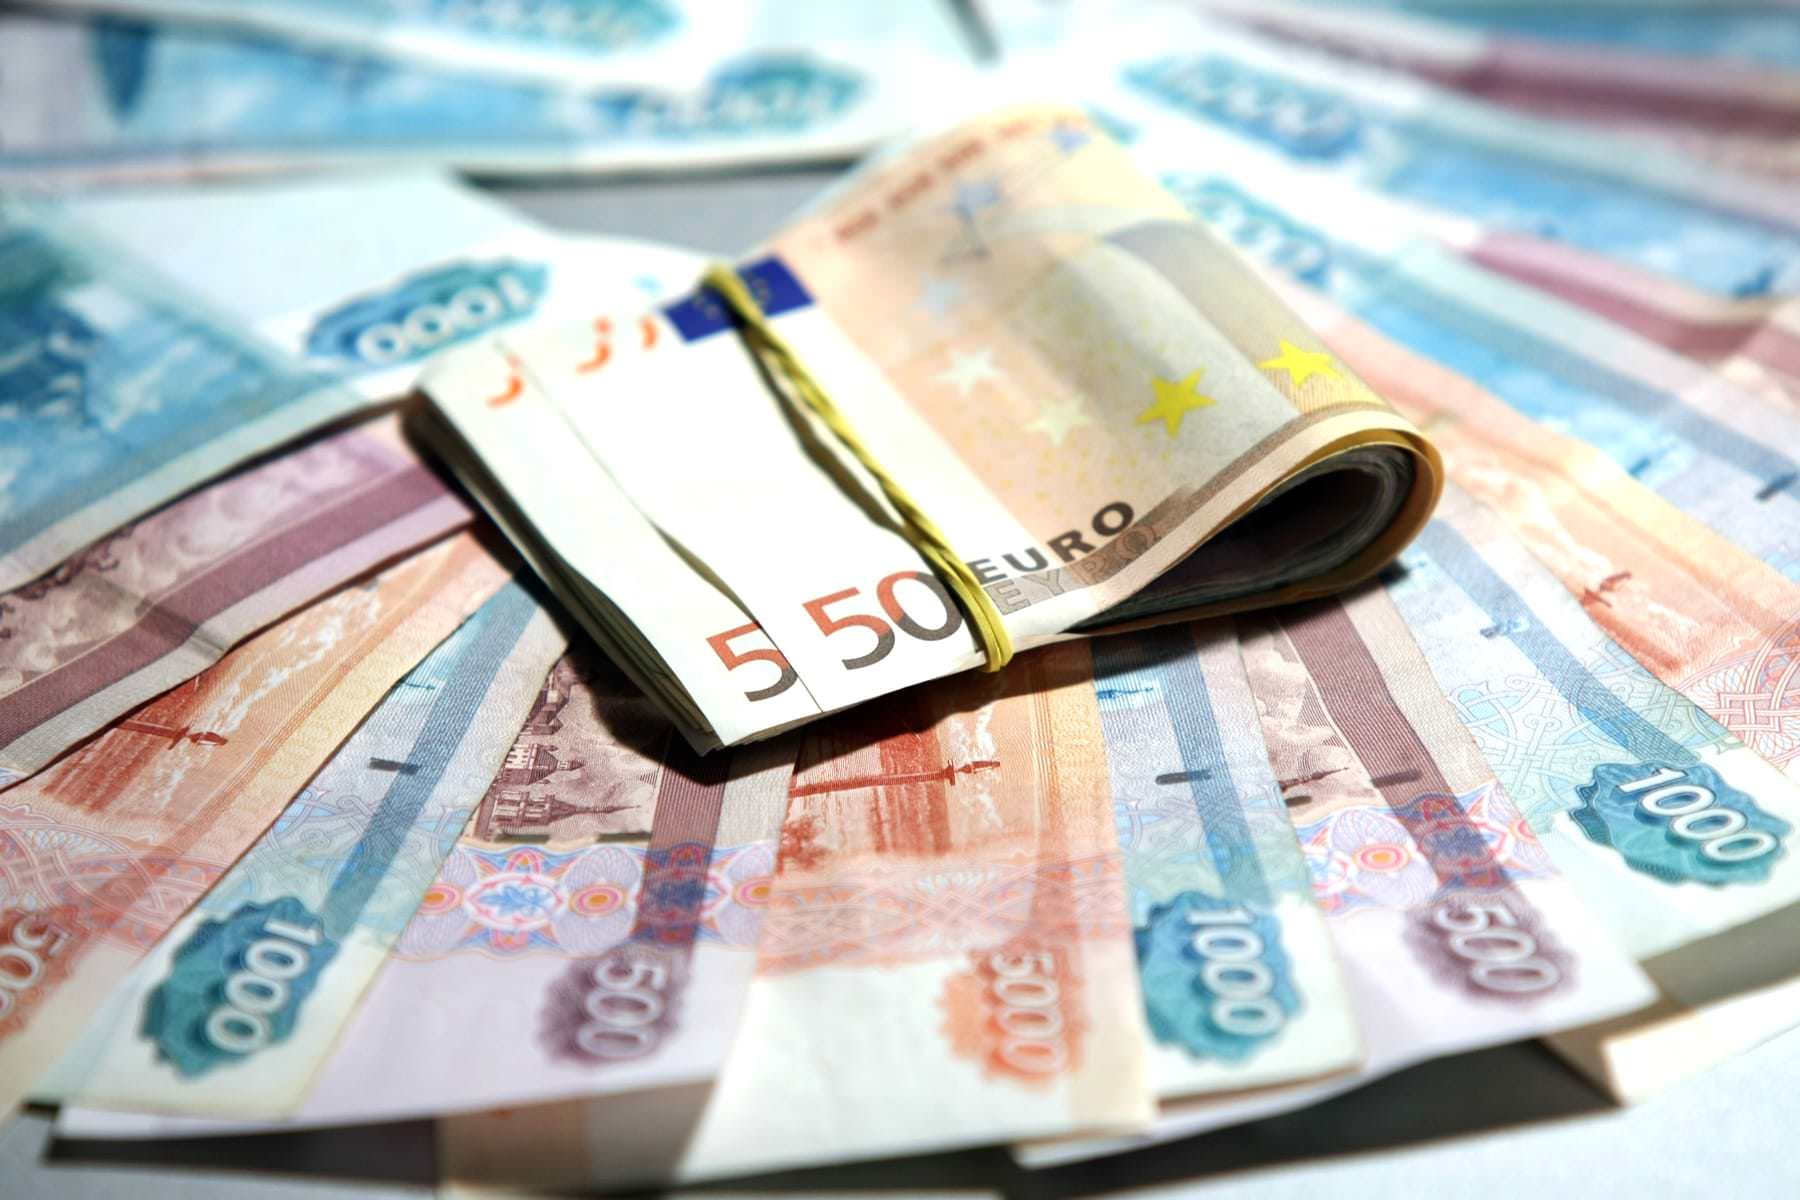 S-1-marta-dollary-i-evro-rossiyan-prinuditelno-skonvertiruyut-v-rubli-po-nevygodnomu-kursu-2